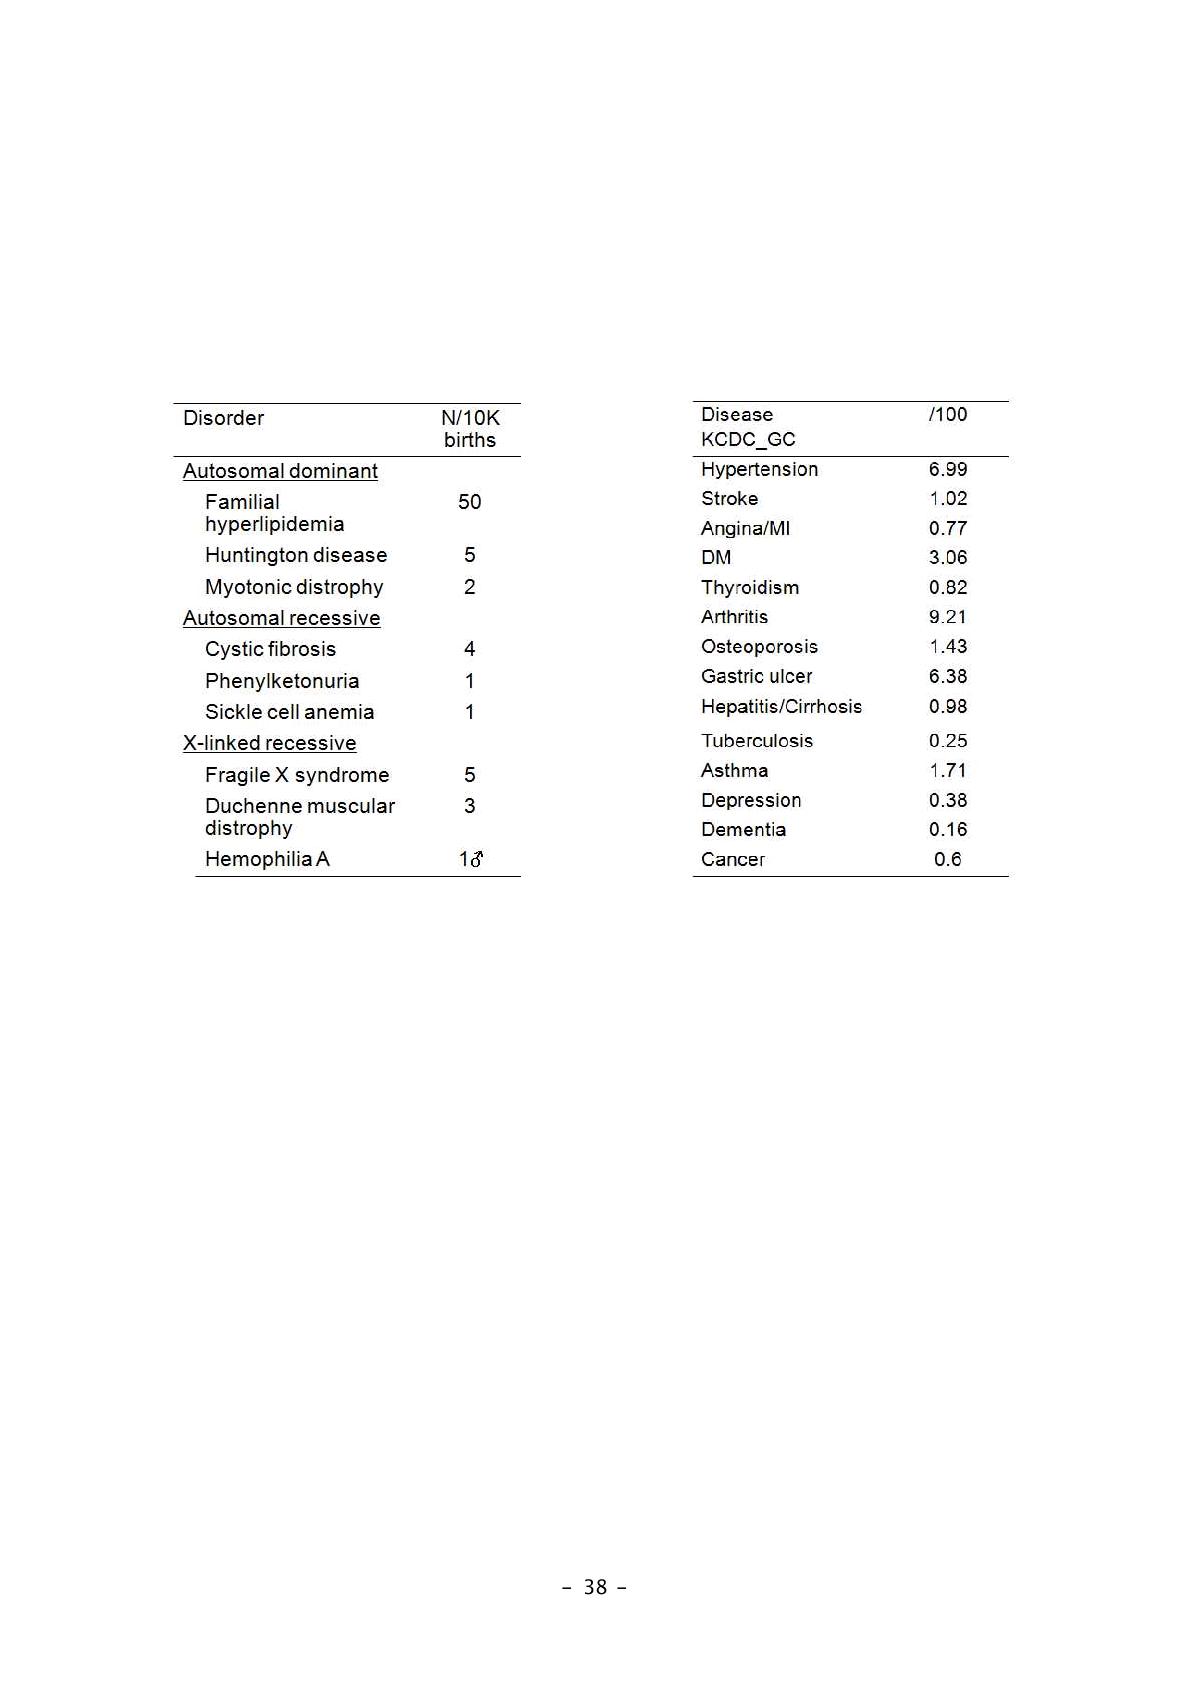 대표적 유전질환과 복합질환의 유병률 비교 (Comparison of prevalence between Mendelian